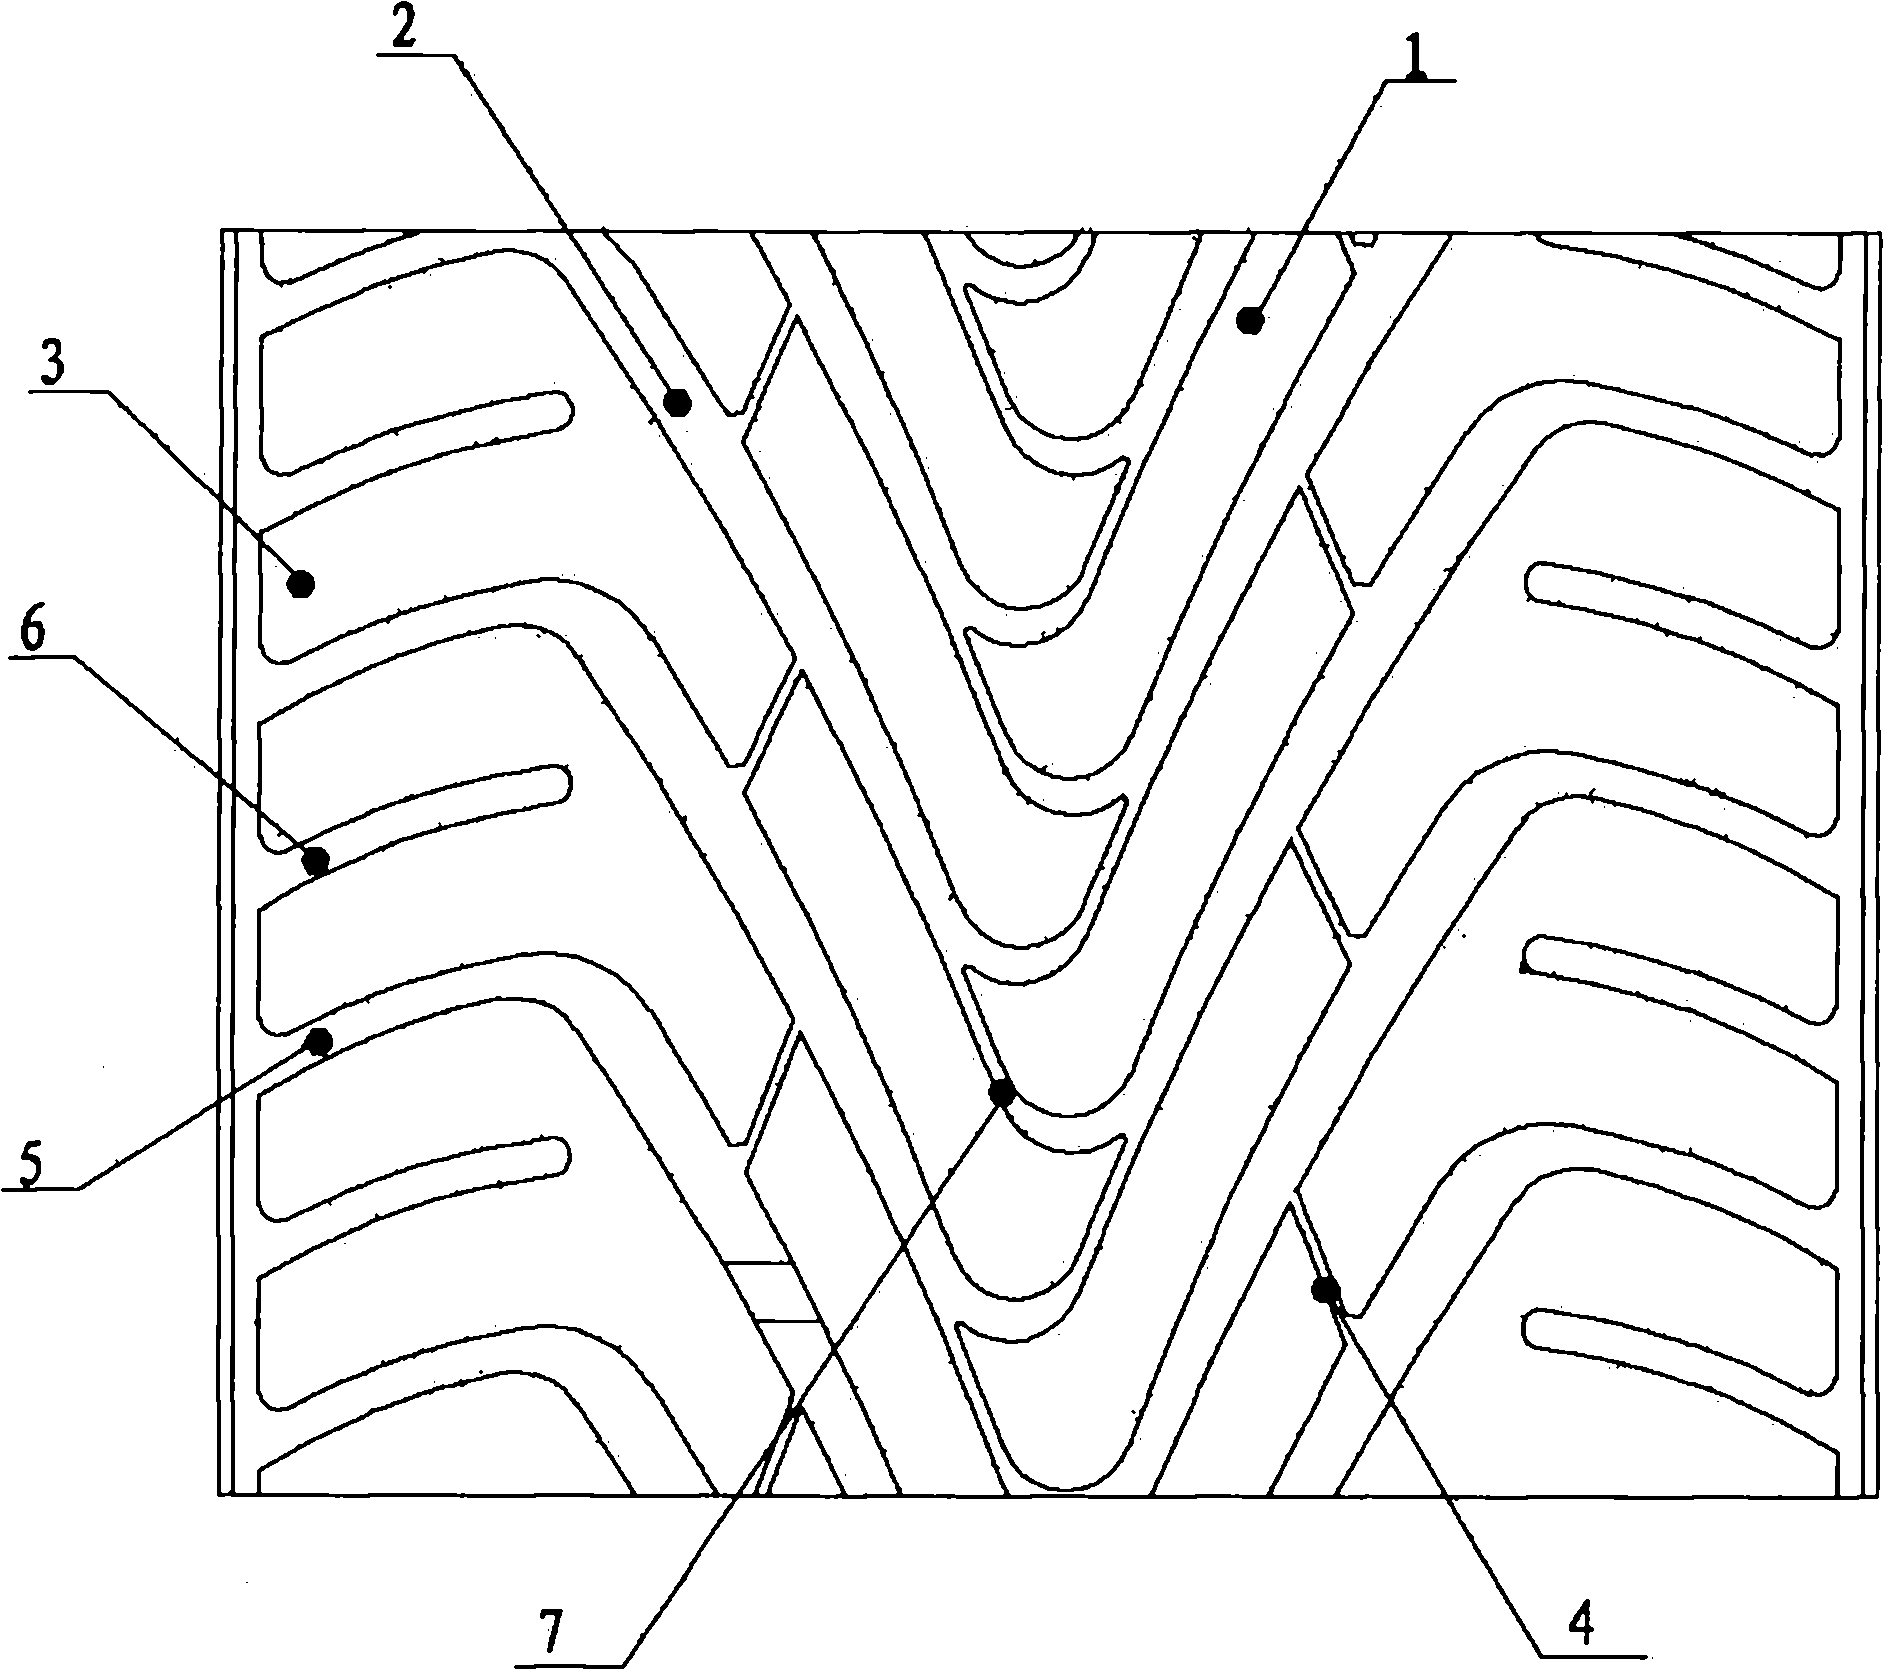 Tread pattern for radial ply tire of sedan